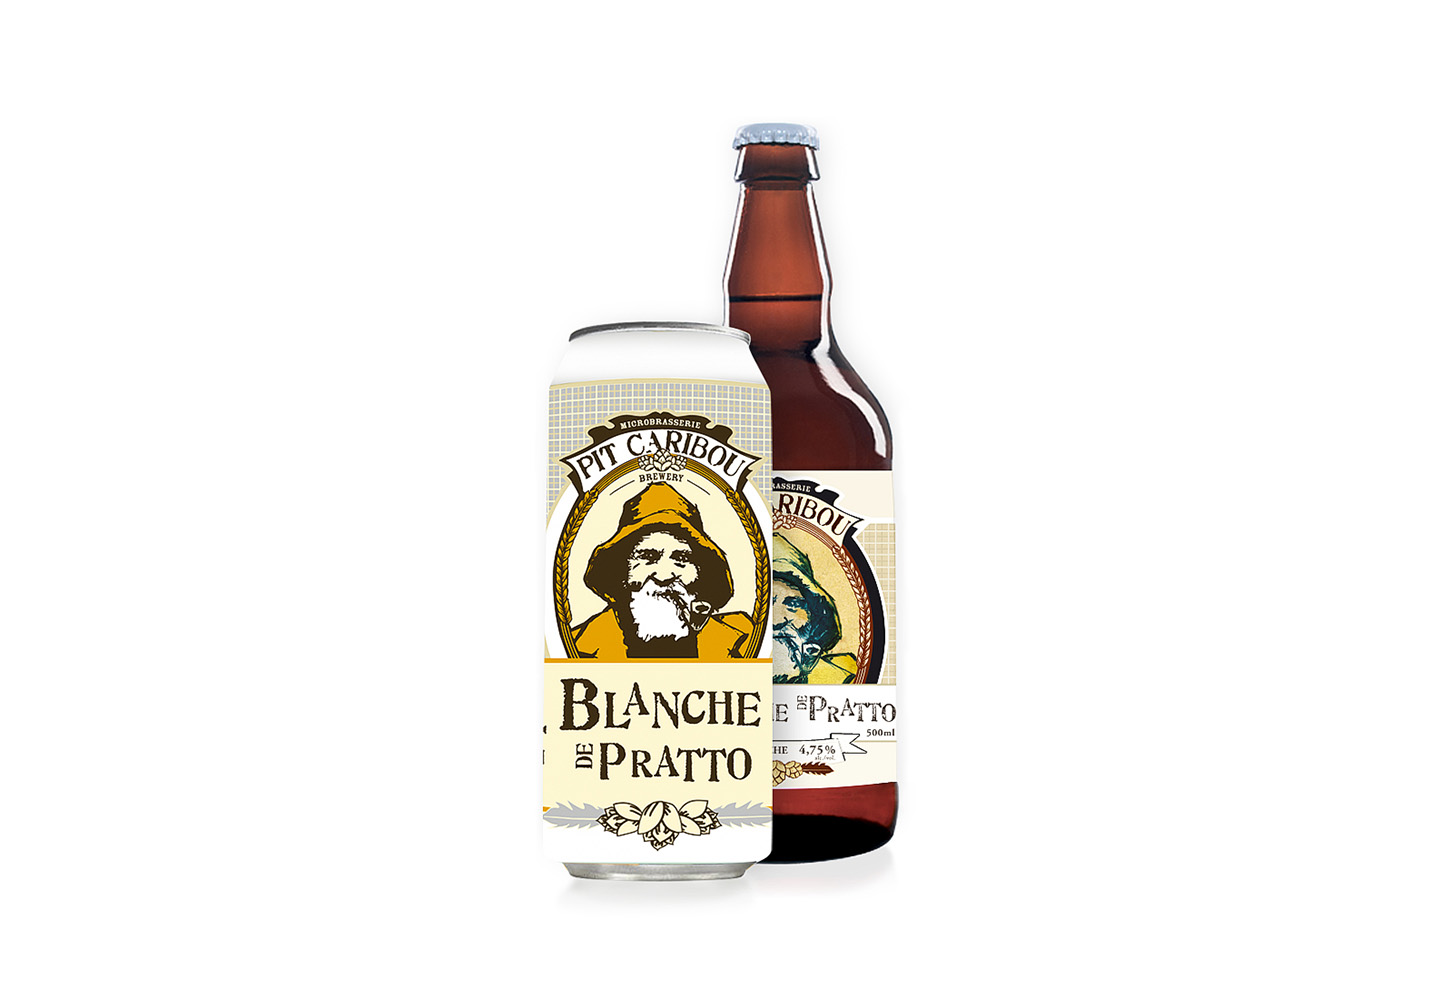 Bière classique – Blanche de Pratto – Pit Caribou